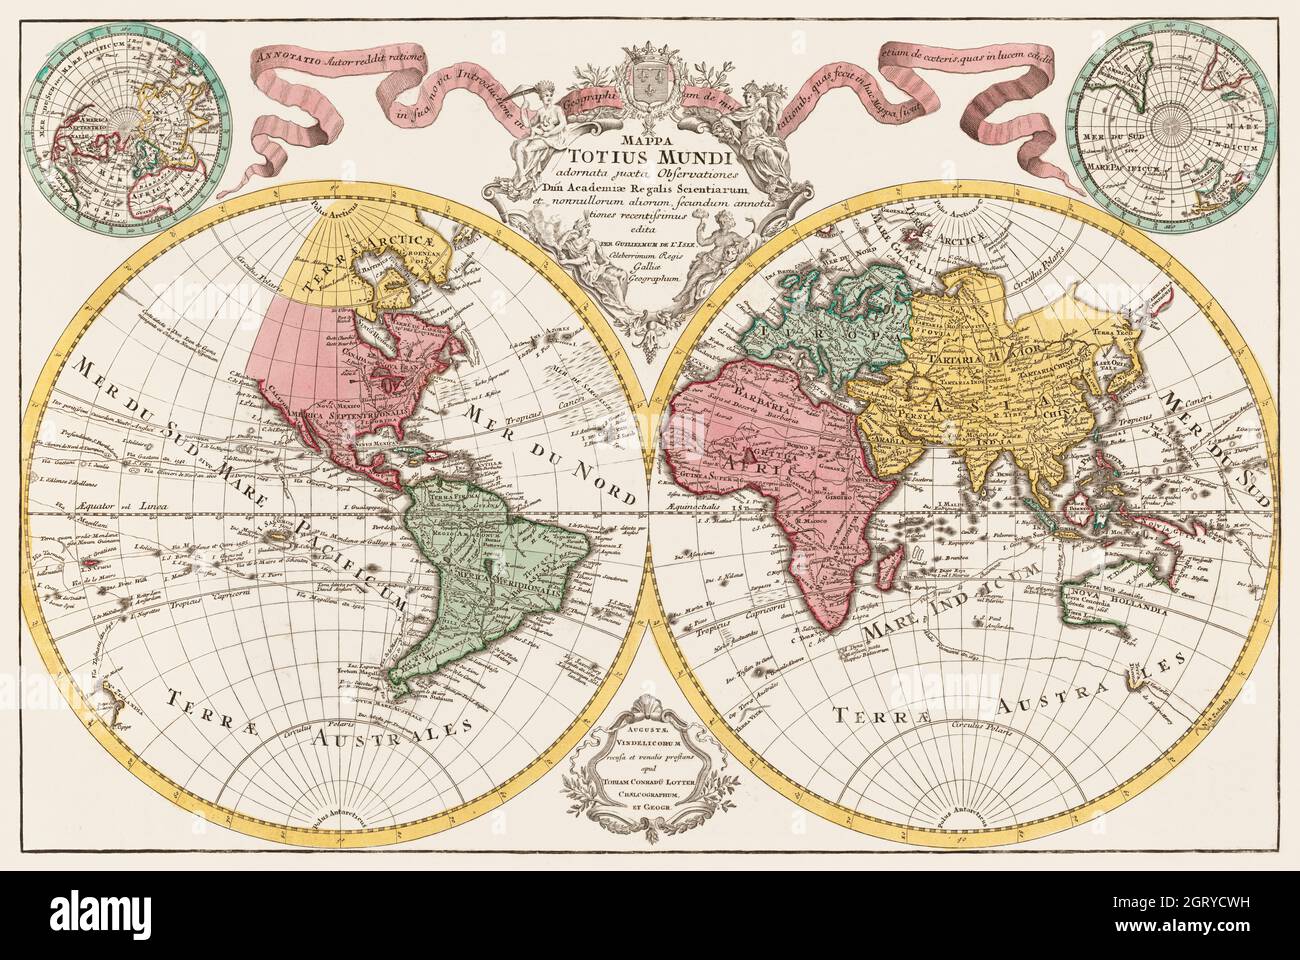 Mappa totius mundi - Mappa del mondo (1775) Foto Stock